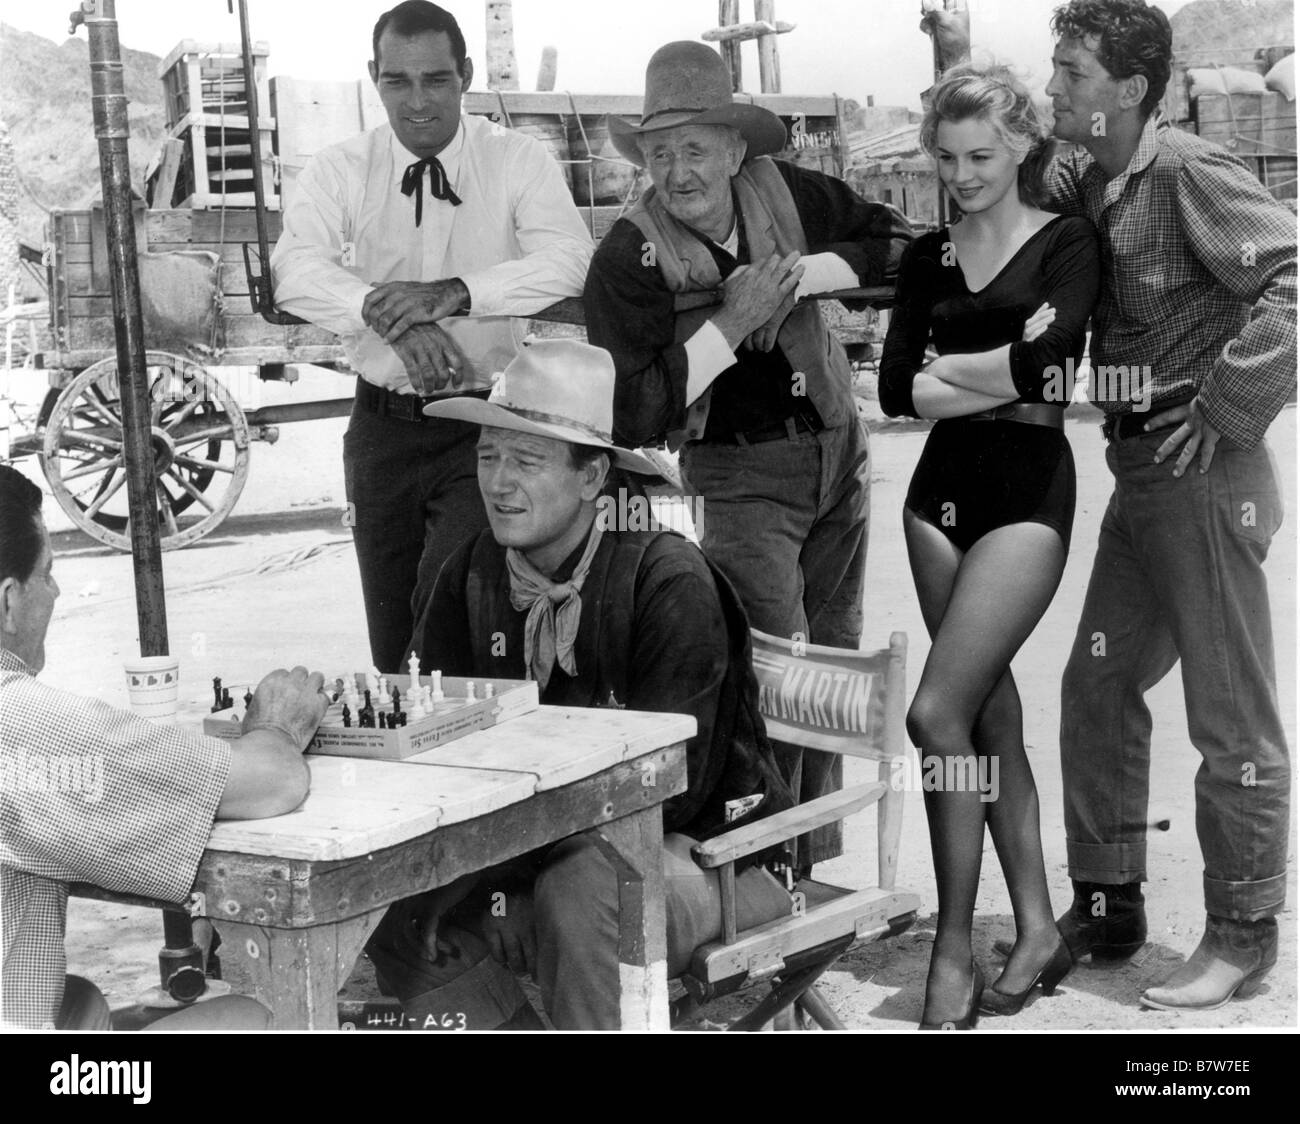 Rio Bravo Jahr: 1959 USA John Russell, John Wayne, Walter Brennan, Angie Dickinson, Dean Martin Regisseur: Howard Hawks schießen Bild Stockfoto